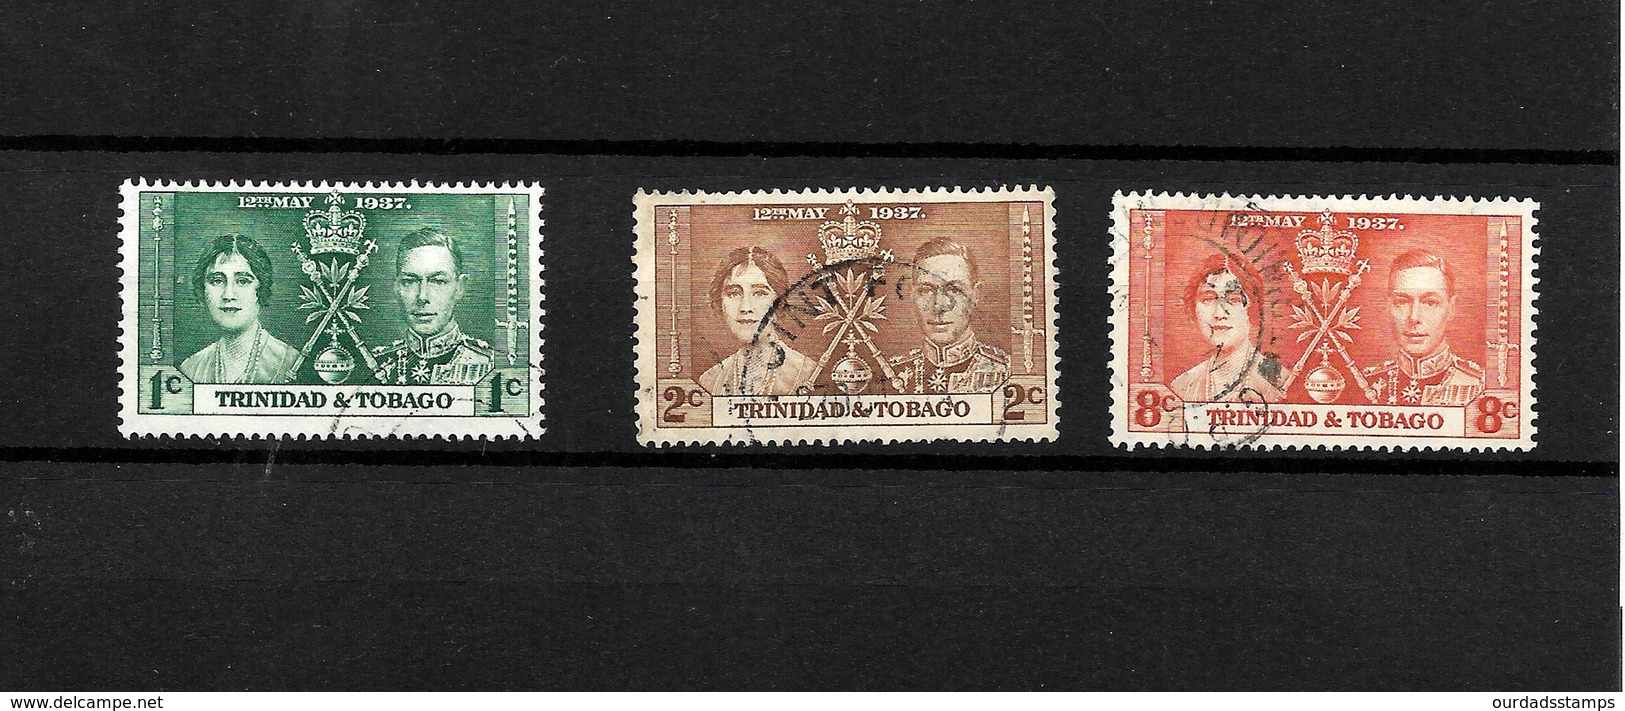 Trinidad & Tobago KGVI 1937 Coronation, Complete Set Used (7131) - Trinidad & Tobago (...-1961)